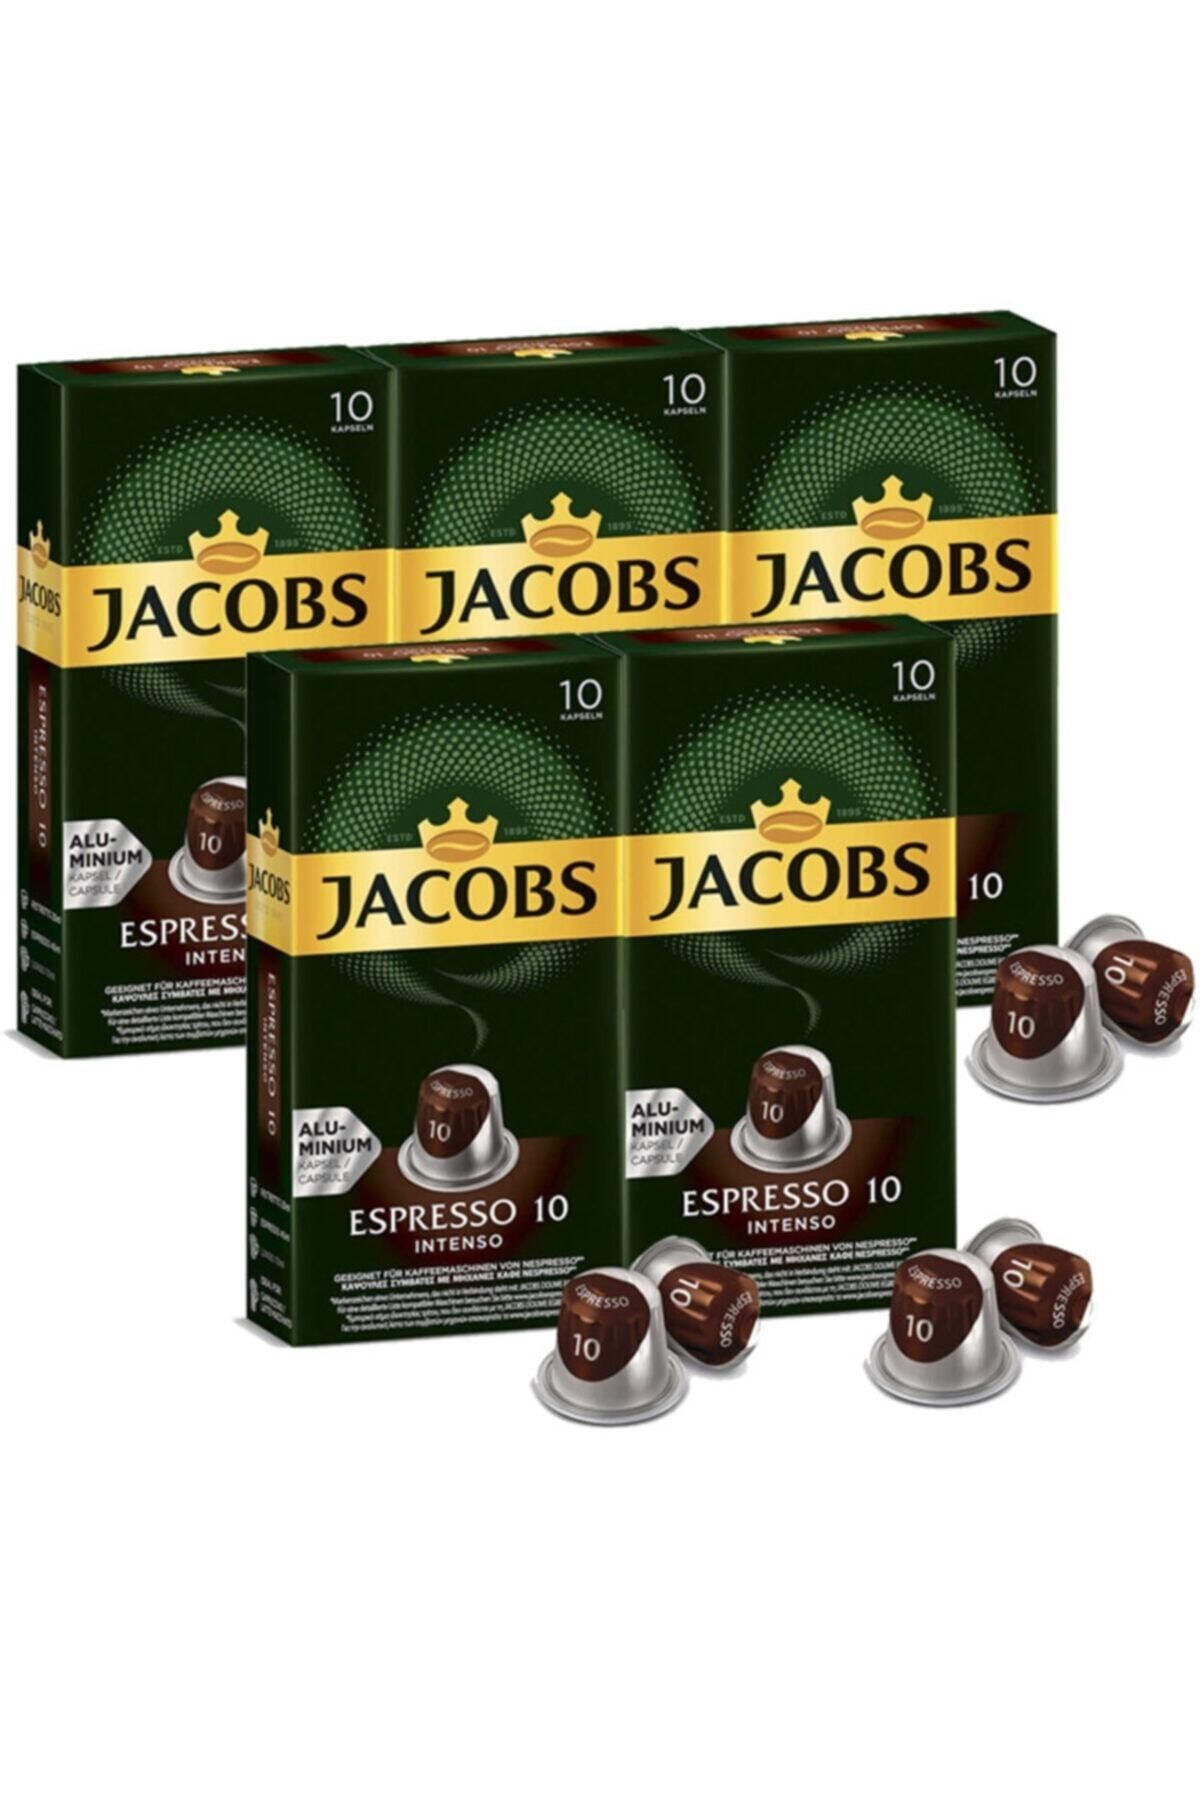 Jacobs Espresso 10 Intenso Nespresso Uyumlu Alüminyum Kapsül Kahve 10 Adet X 5 Paket